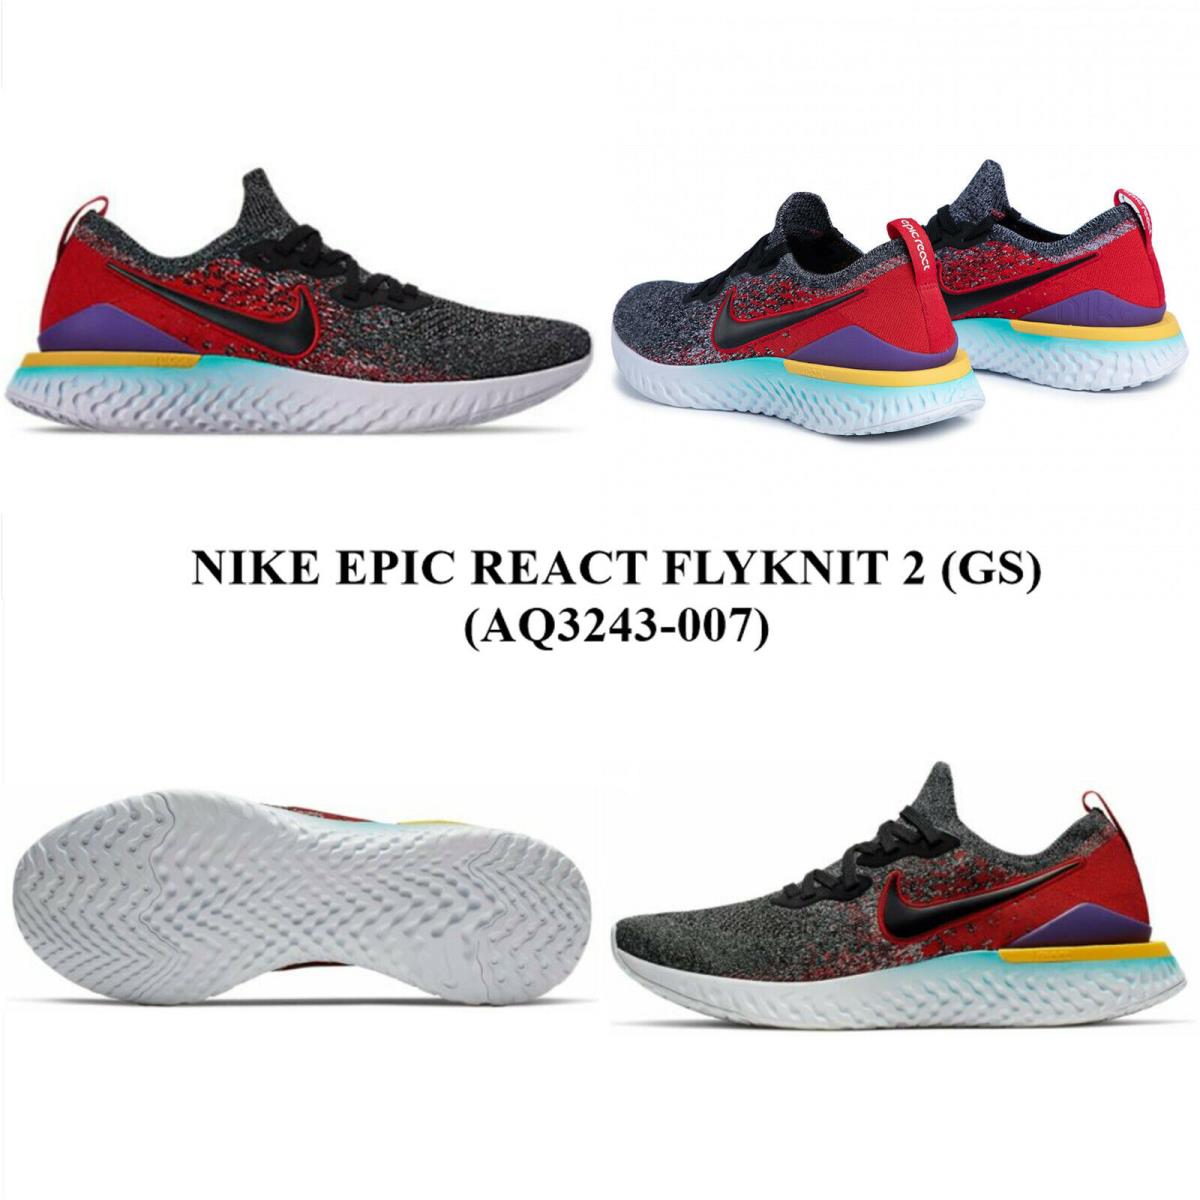 Nike Epic React Flyknit 2 GS AQ3243 - 007 Women`s Running/casual Shoes